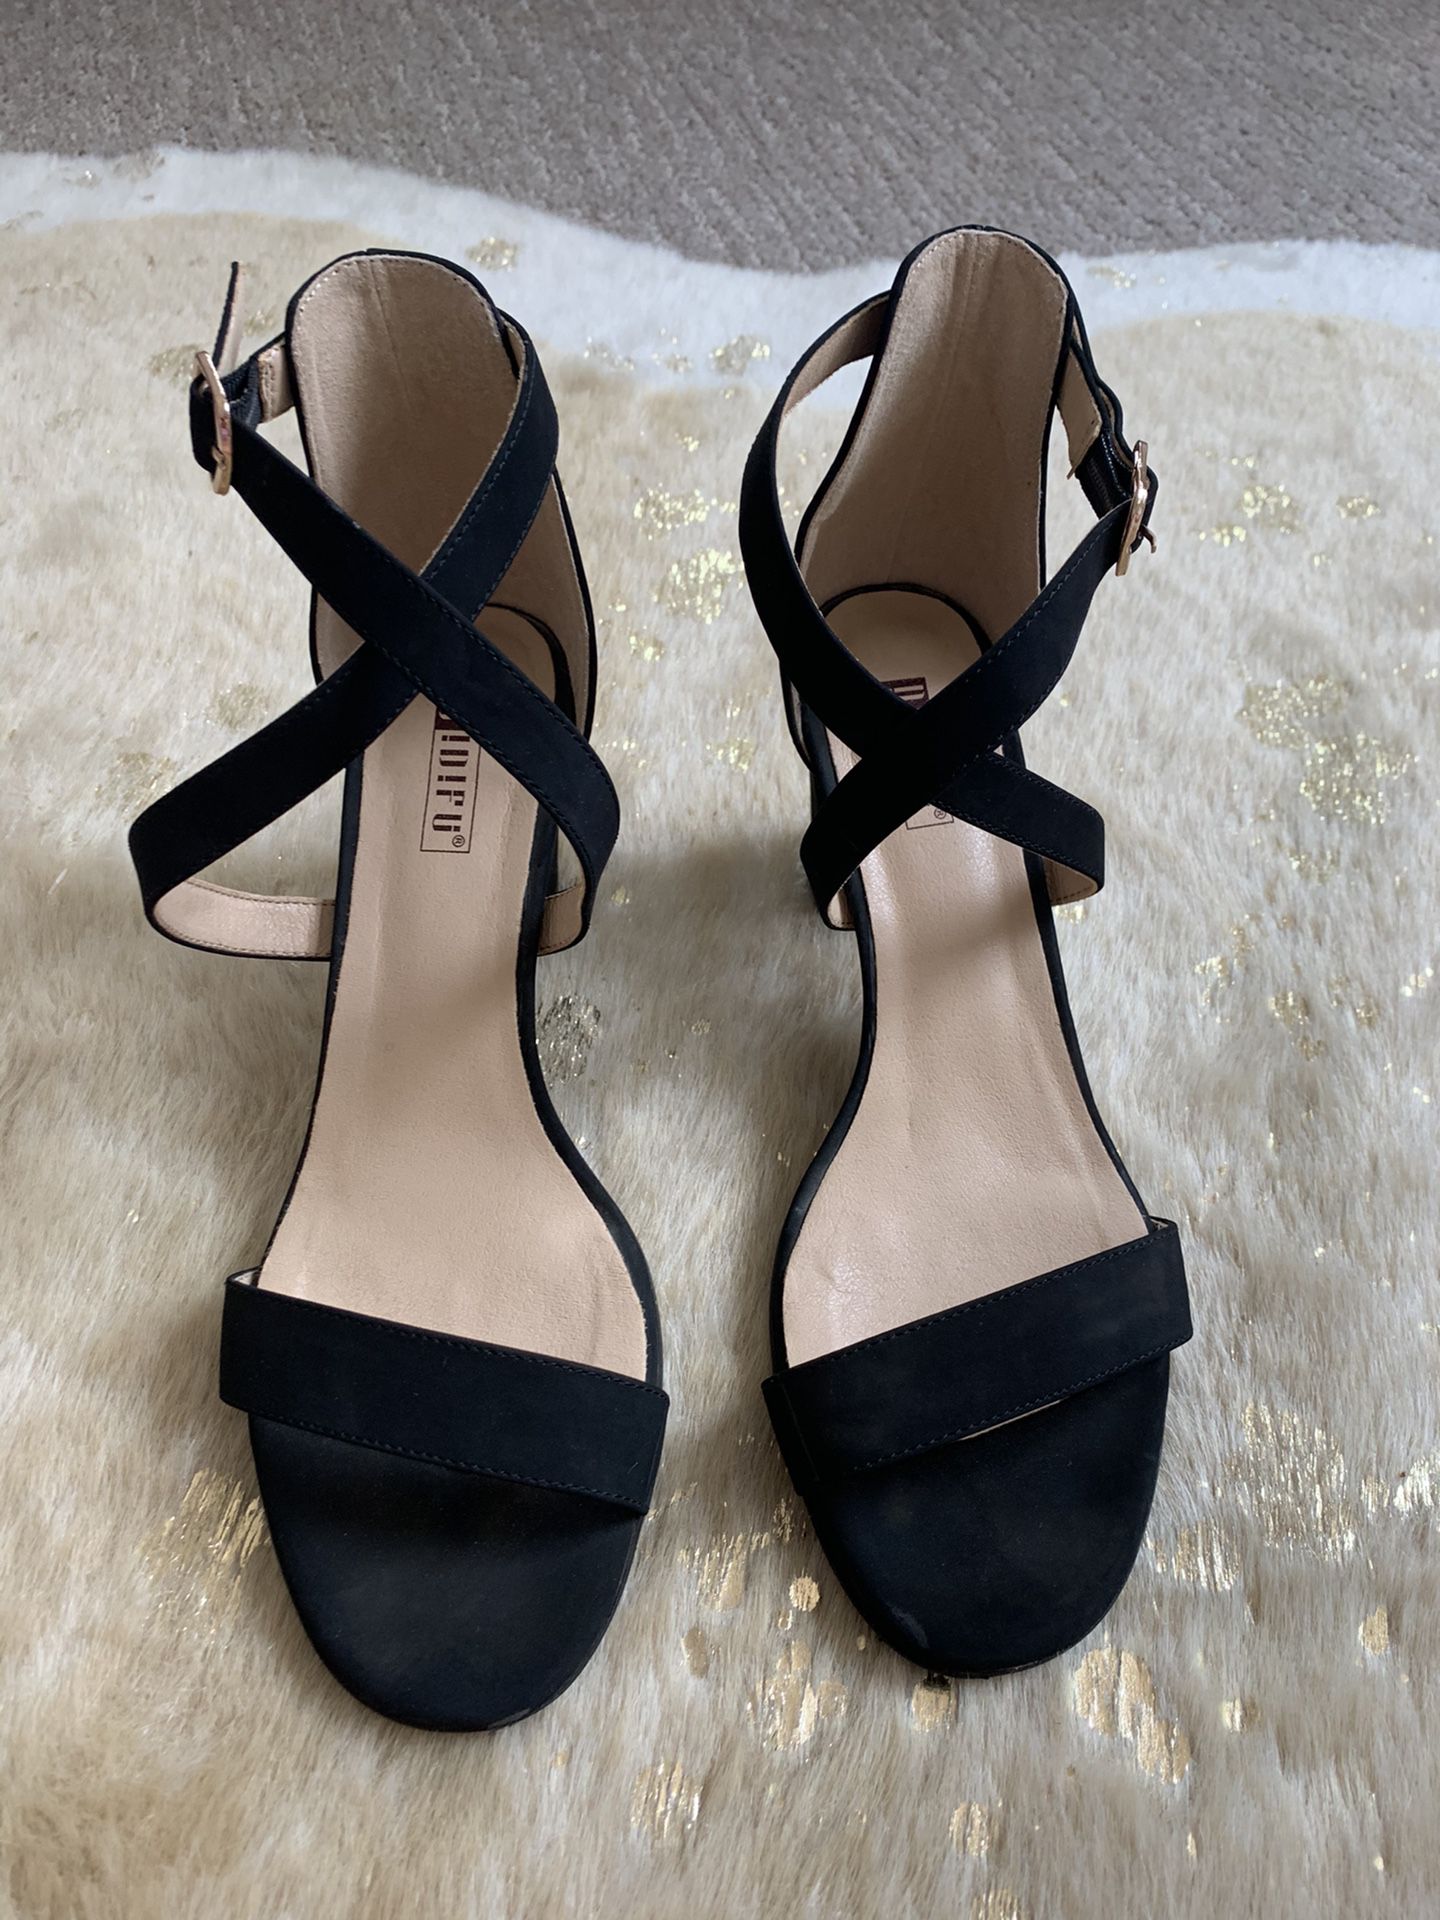 Women’s block heels size 9